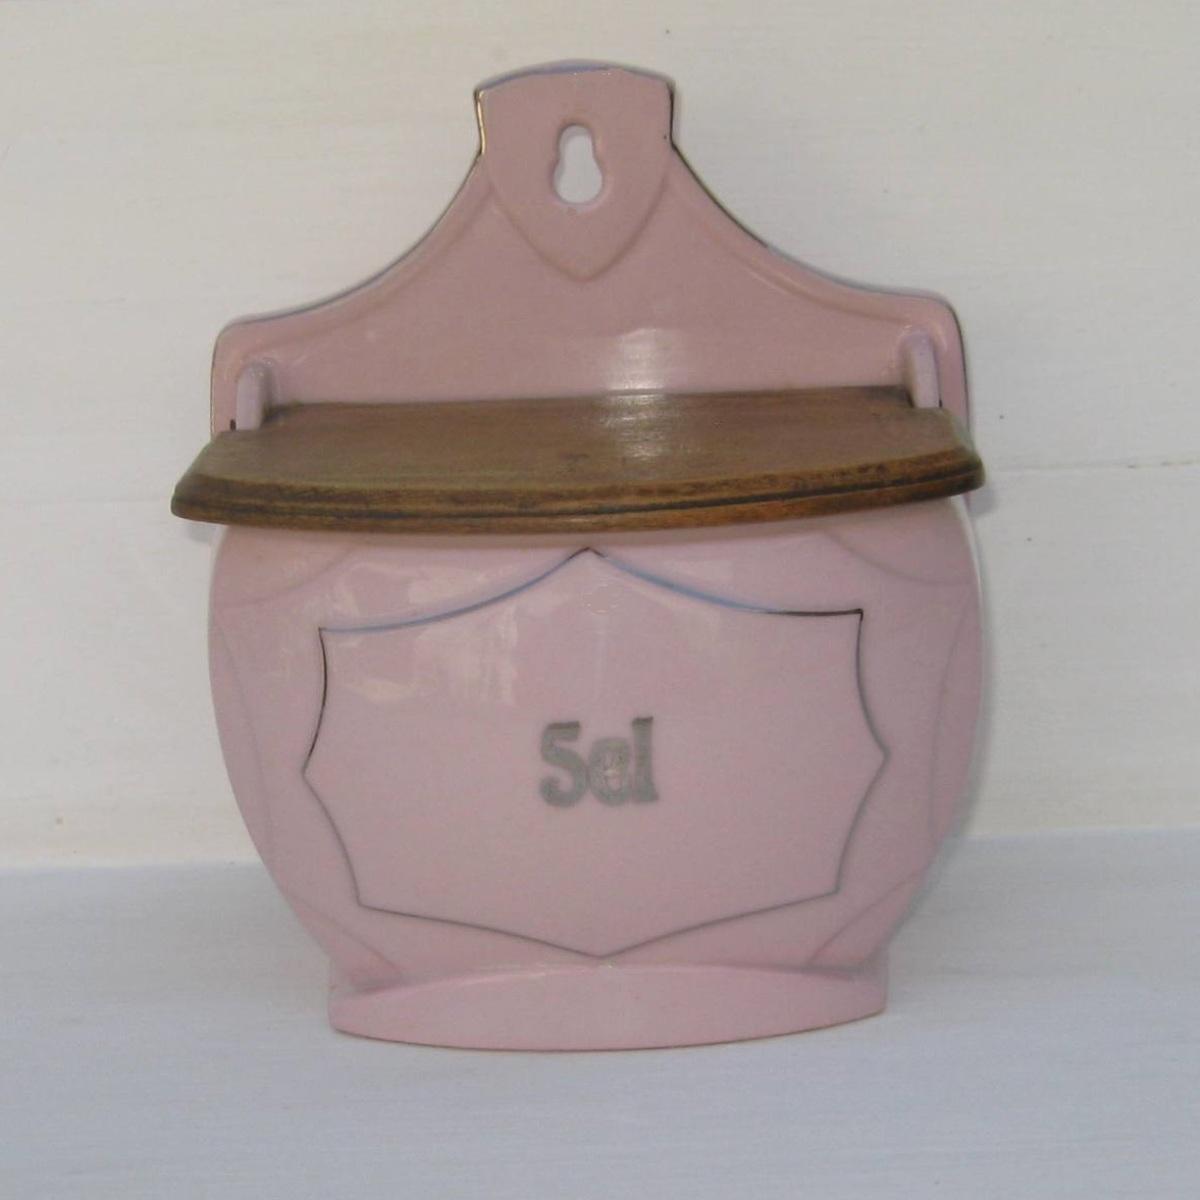 Ancienne boite a sel en porcelaine rose 1